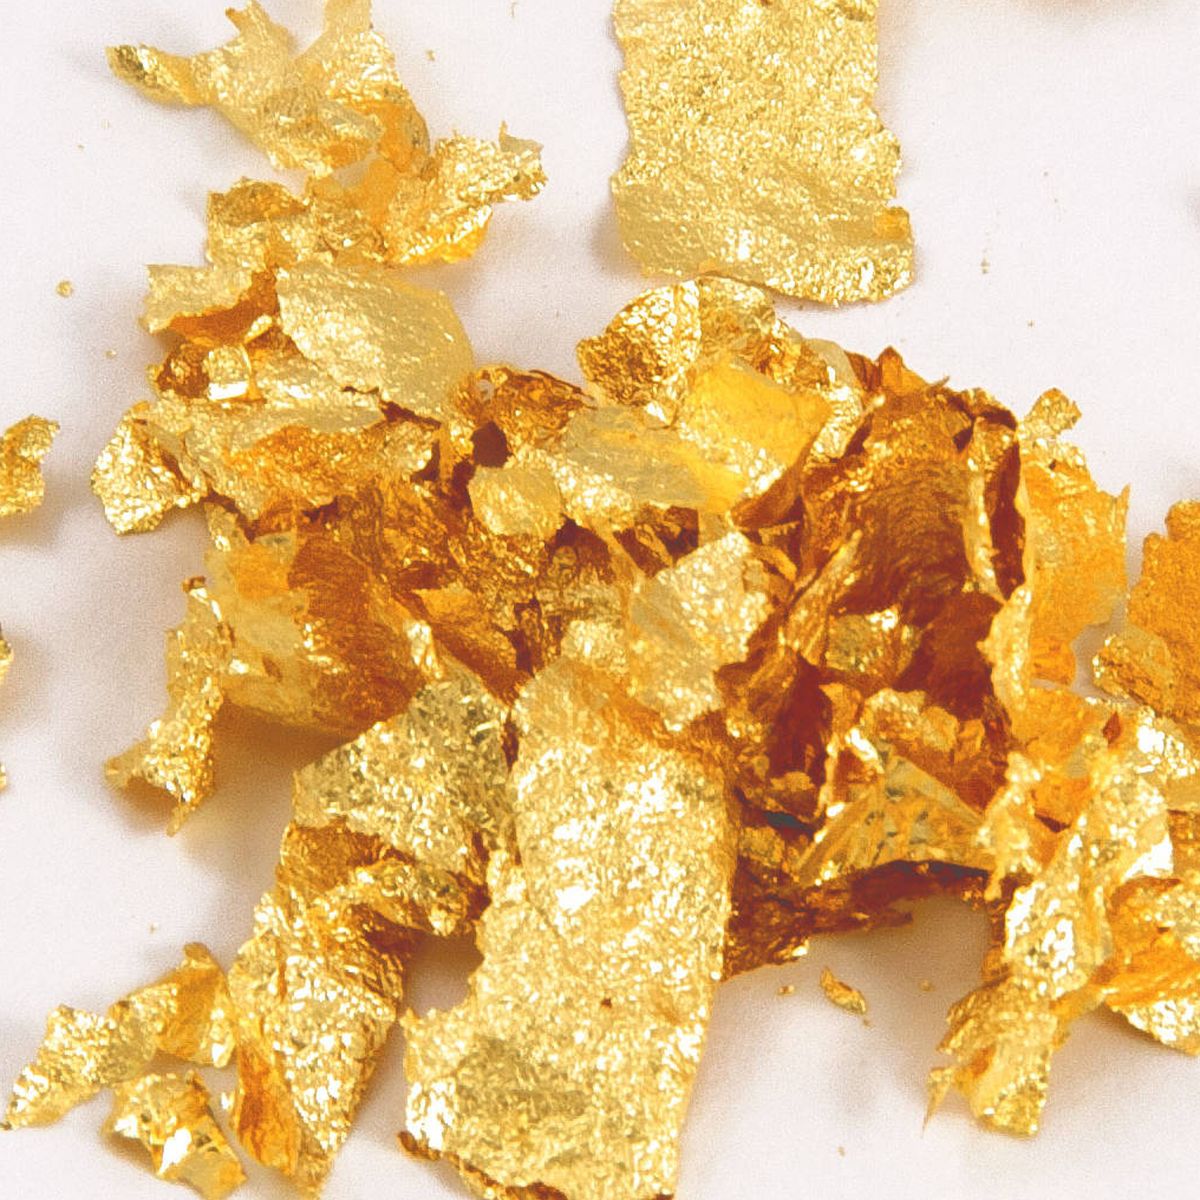 Oro comestible: ¿Qué es, cómo se hace y cuánto cuesta?